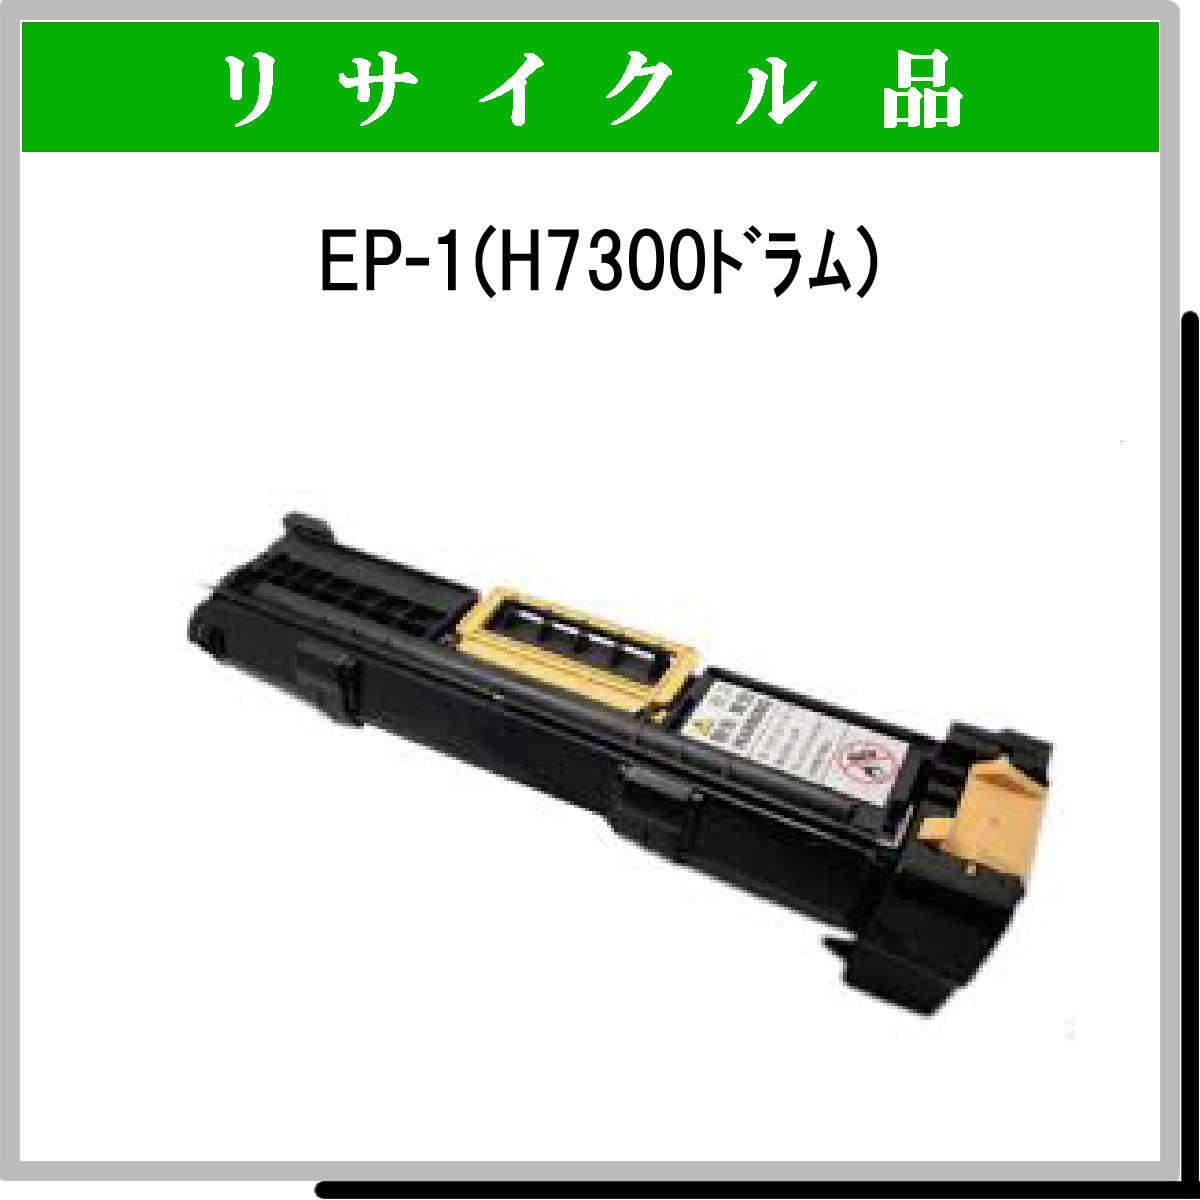 EP-1 (H7300 ﾄﾞﾗﾑ)